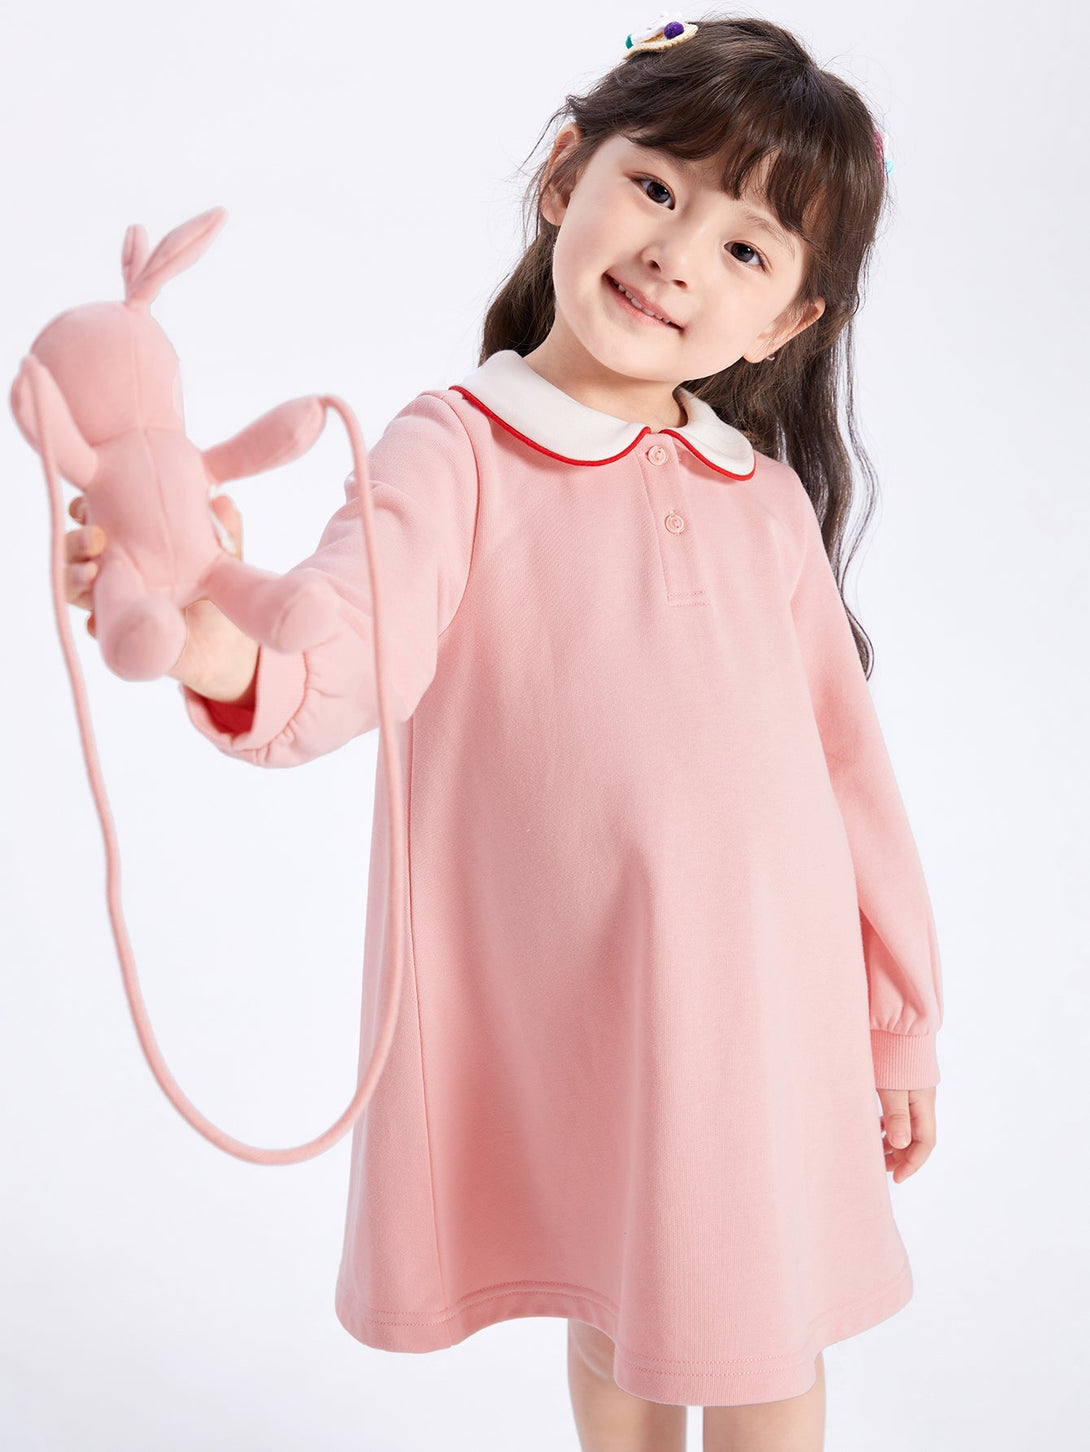 【線上專享】 balabala 童裝幼童女動物圖案針織連衣裙 2-8歲 - balabala